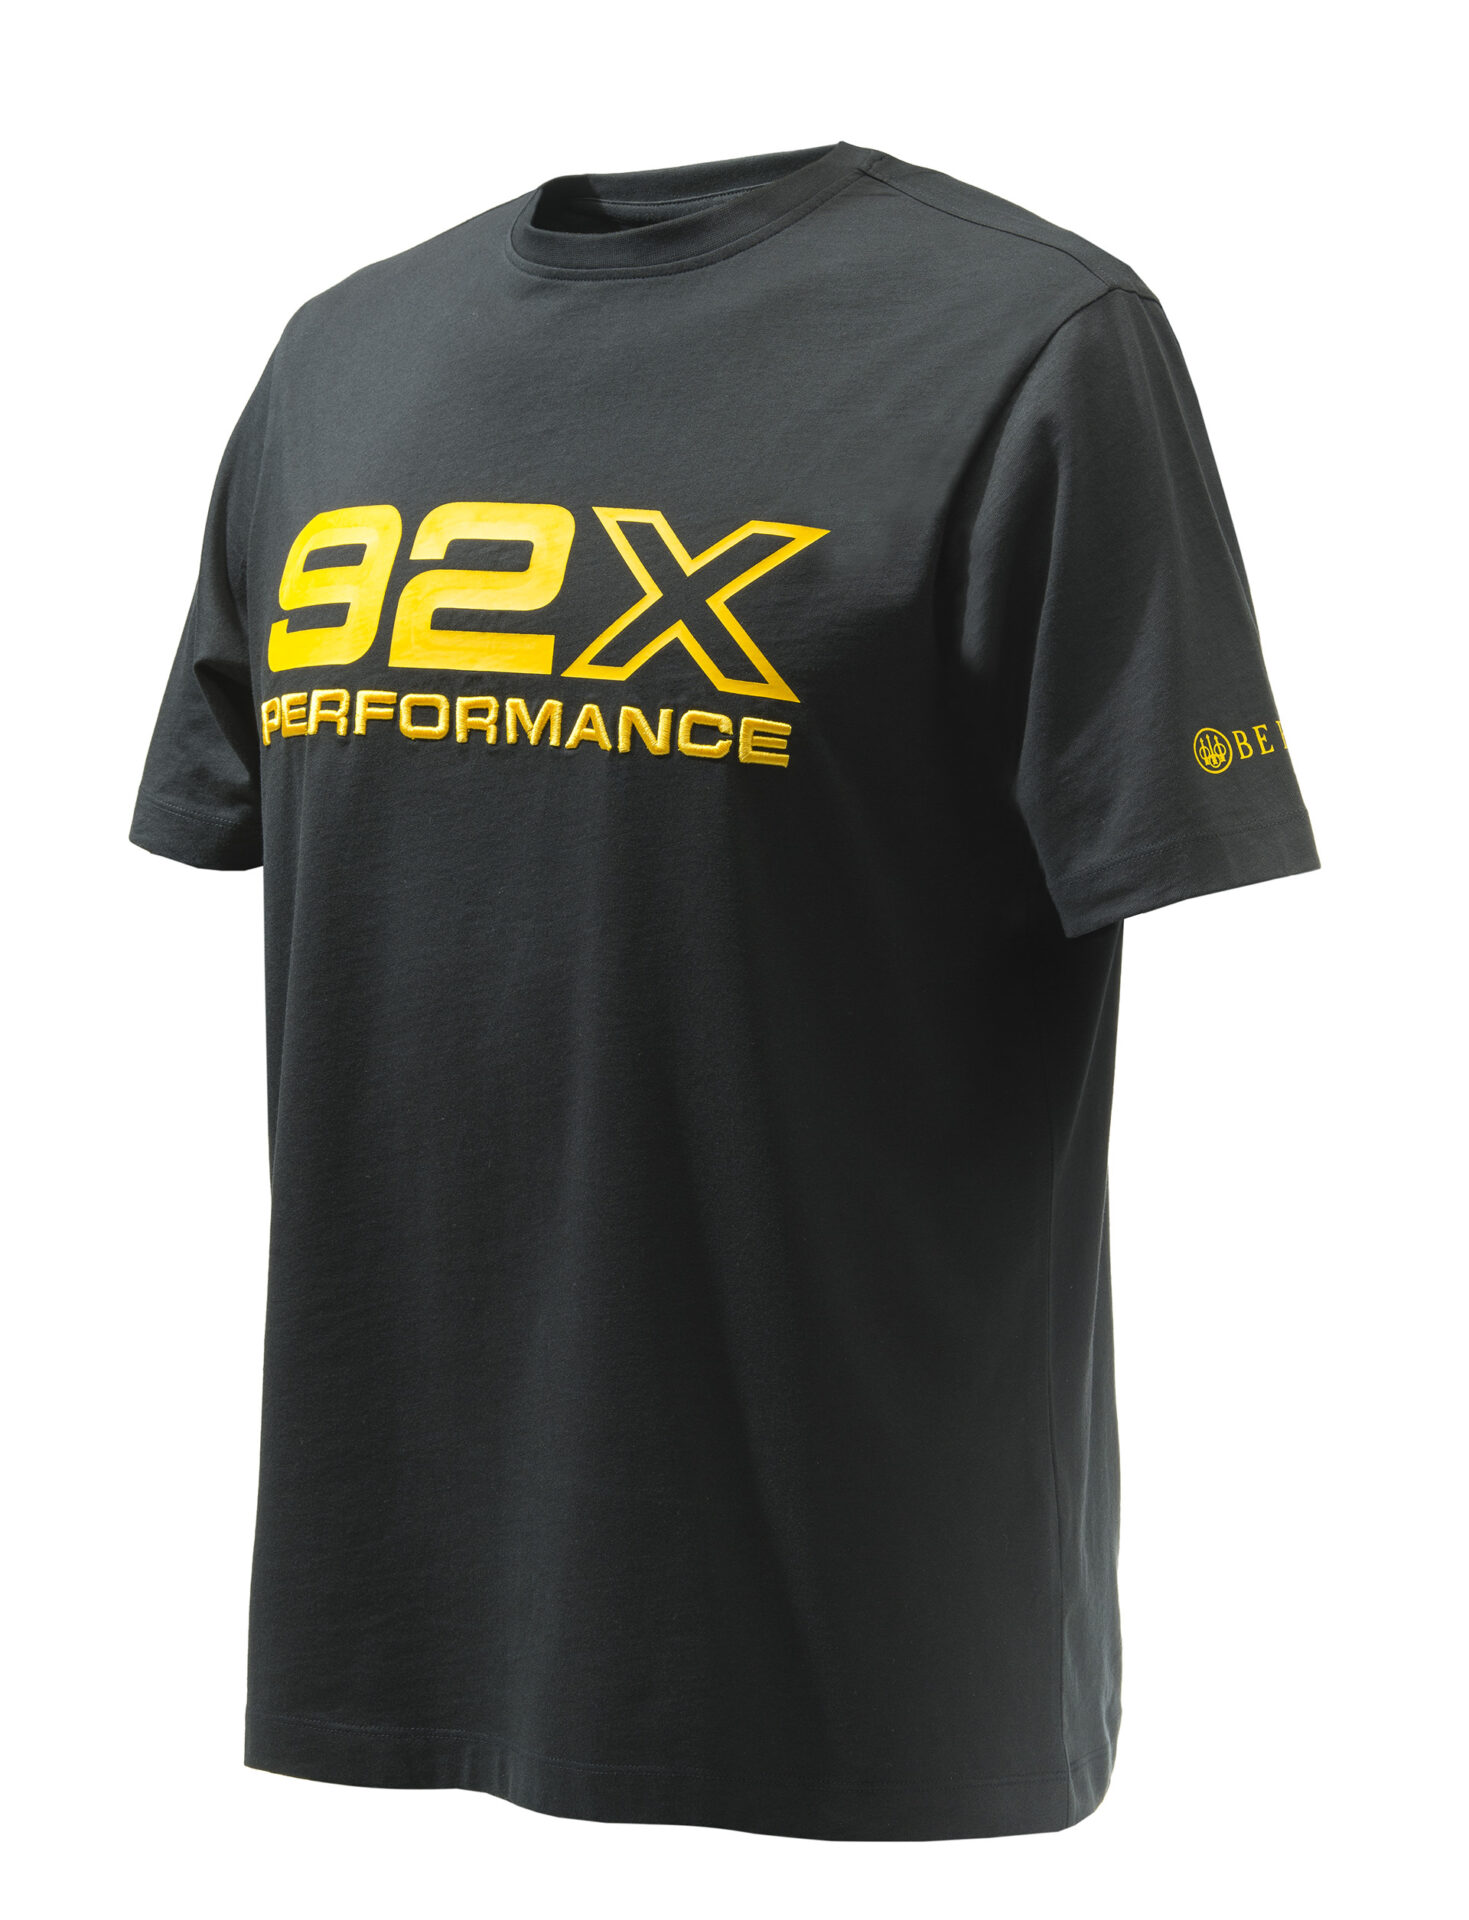 Beretta-92X-Performance-T-Shirt-0999-Black